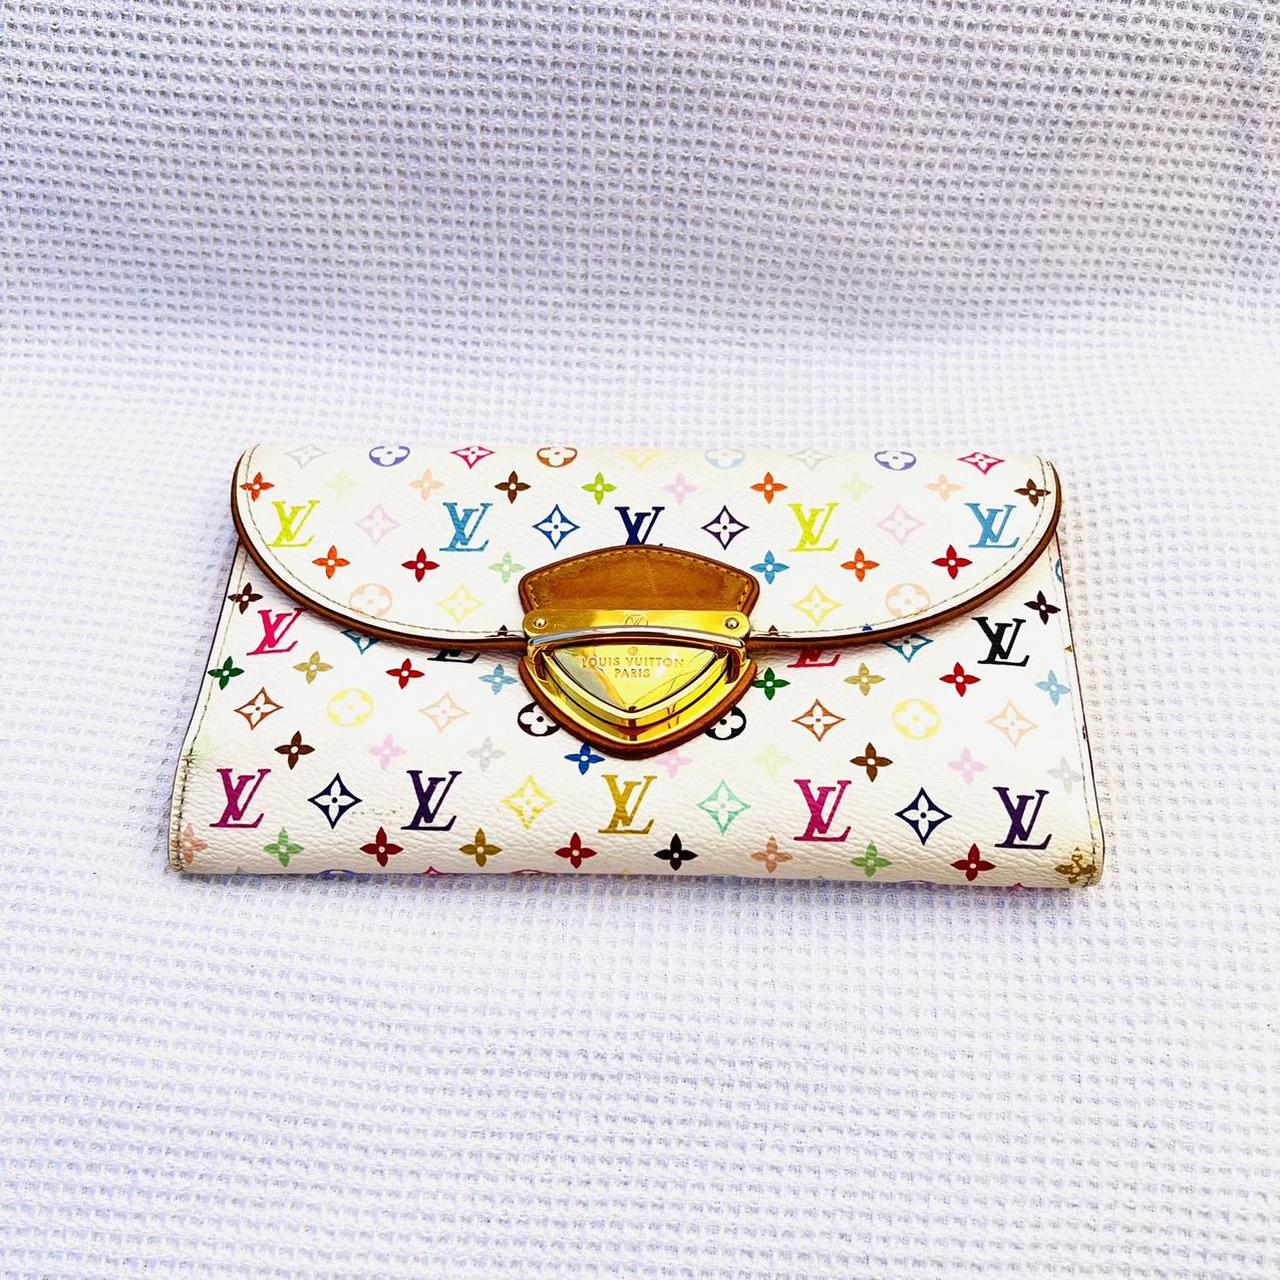 AUTHENTIC Louis Vuitton monogram multicolor wallet. - Depop